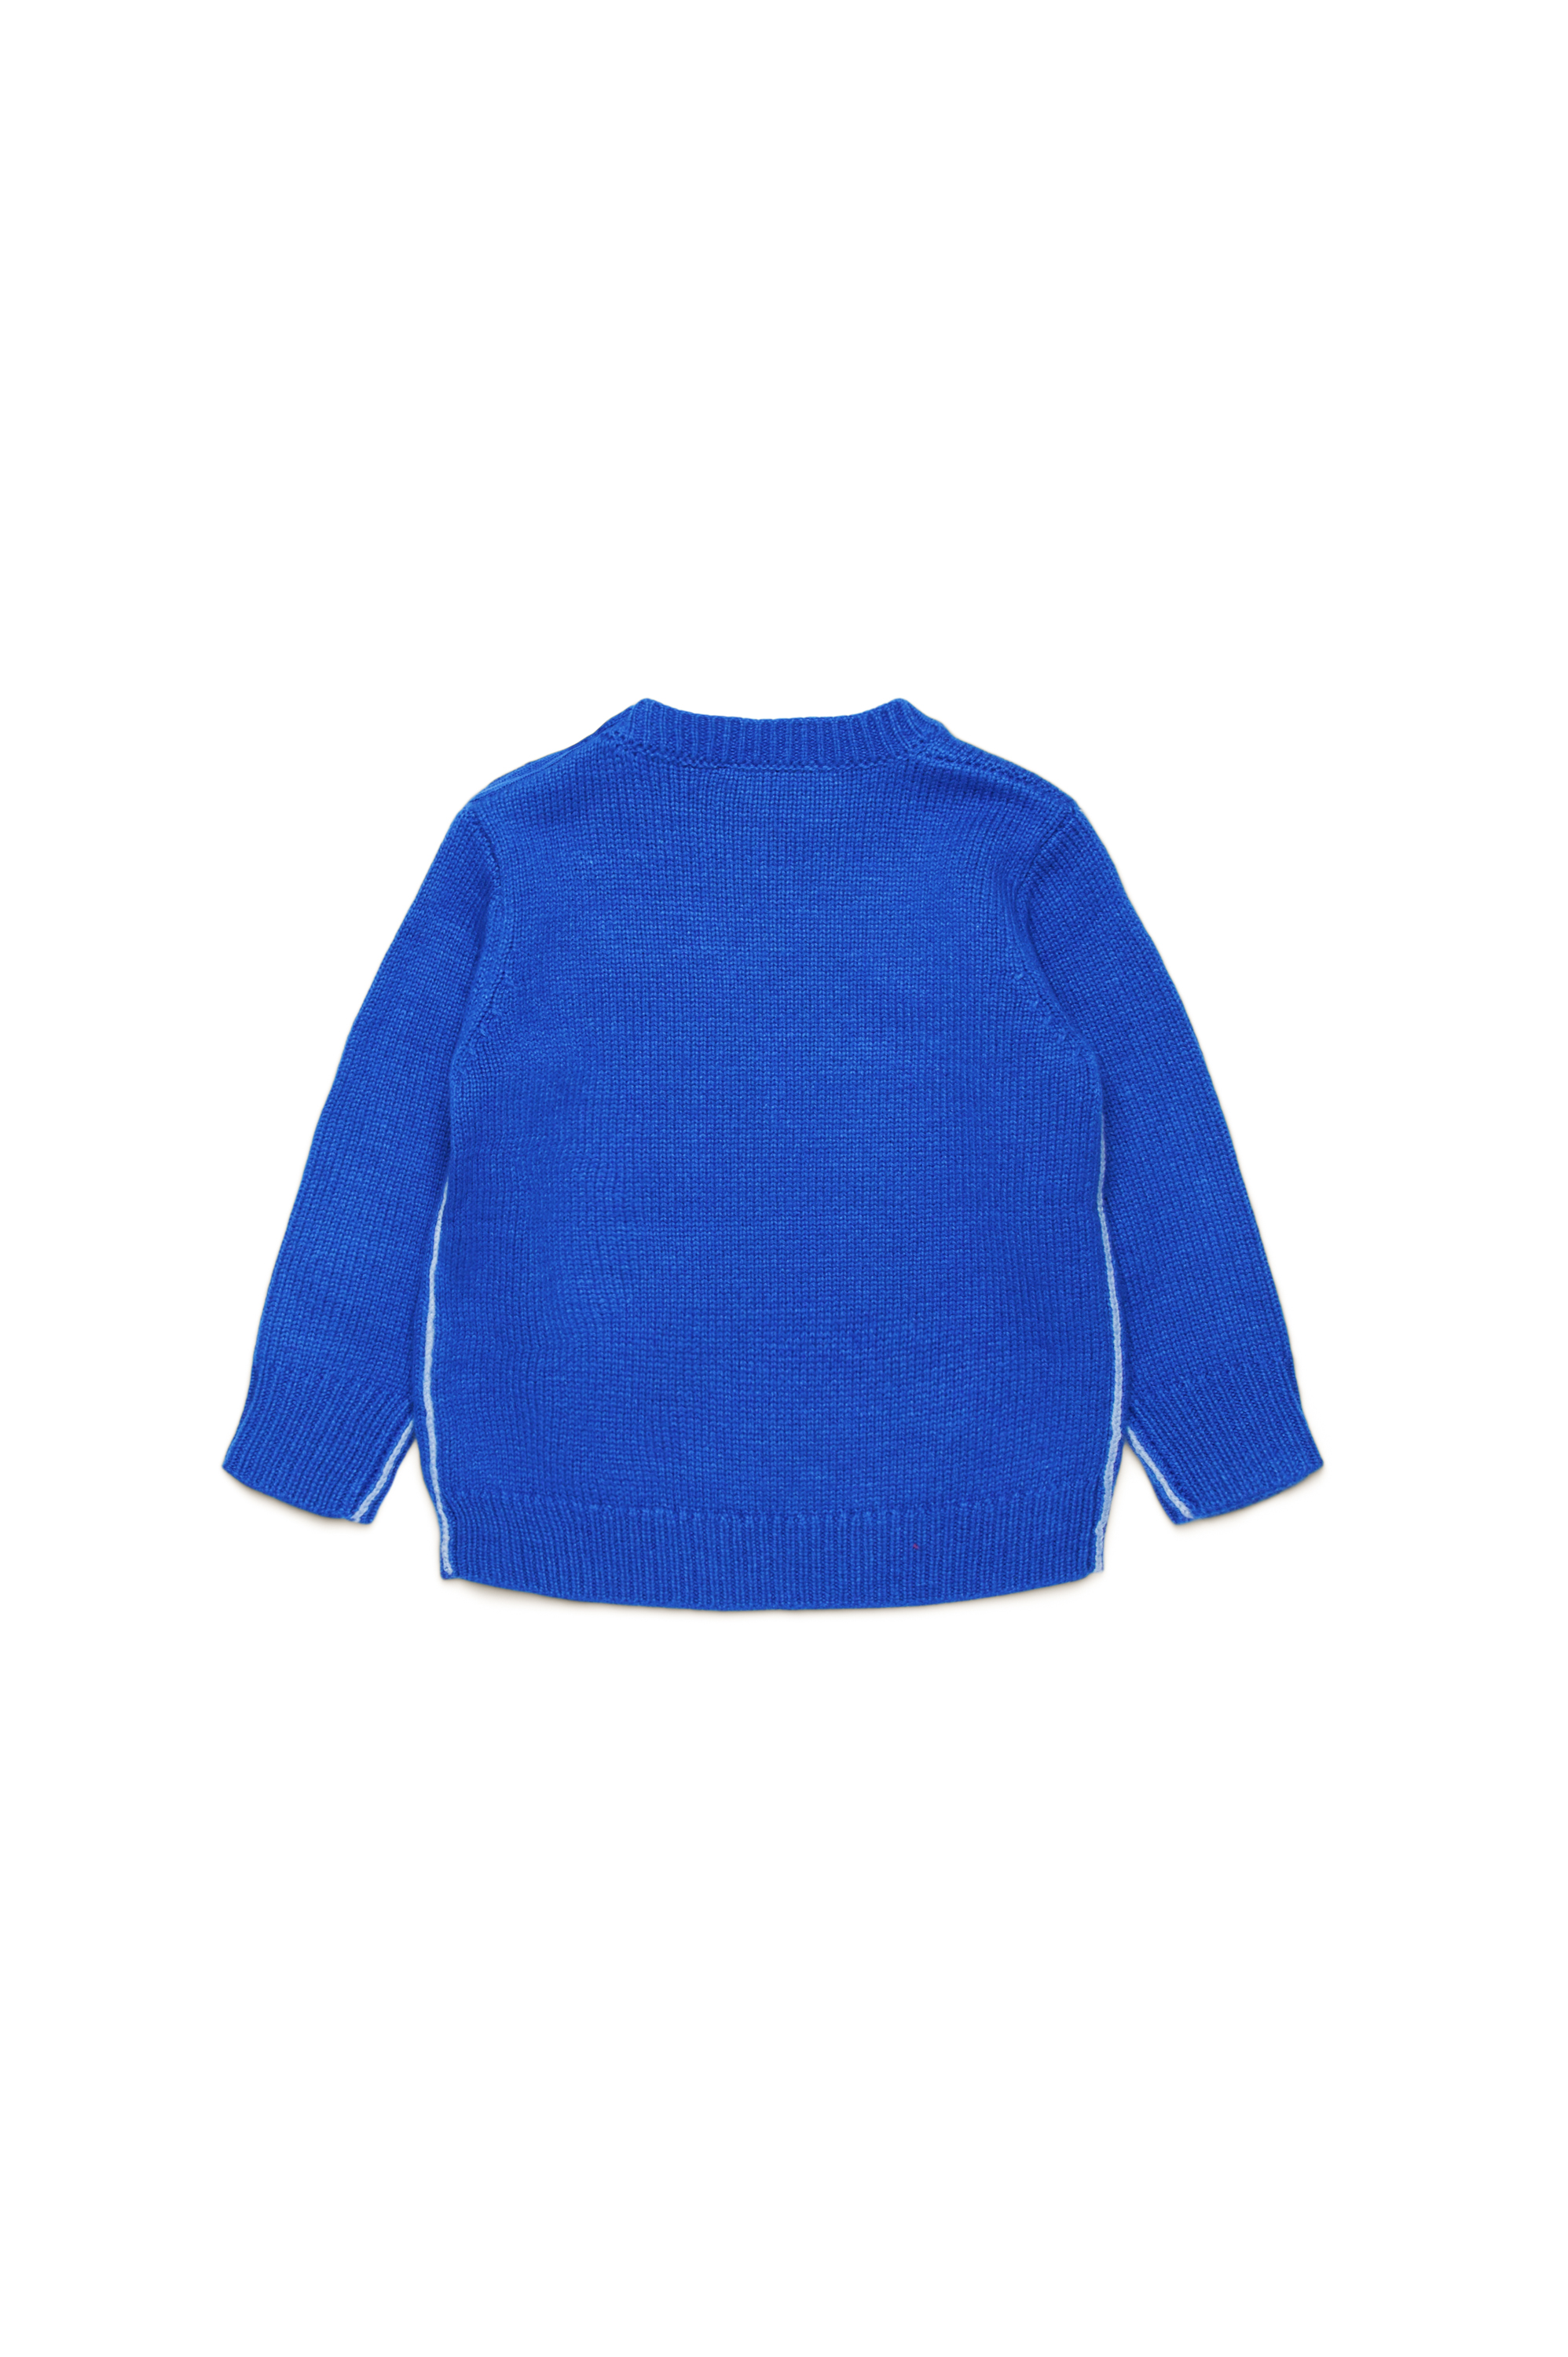 Diesel - KJOSIB, Unisex Piped jumper in cashmere-enriched blend in Blue - Image 2